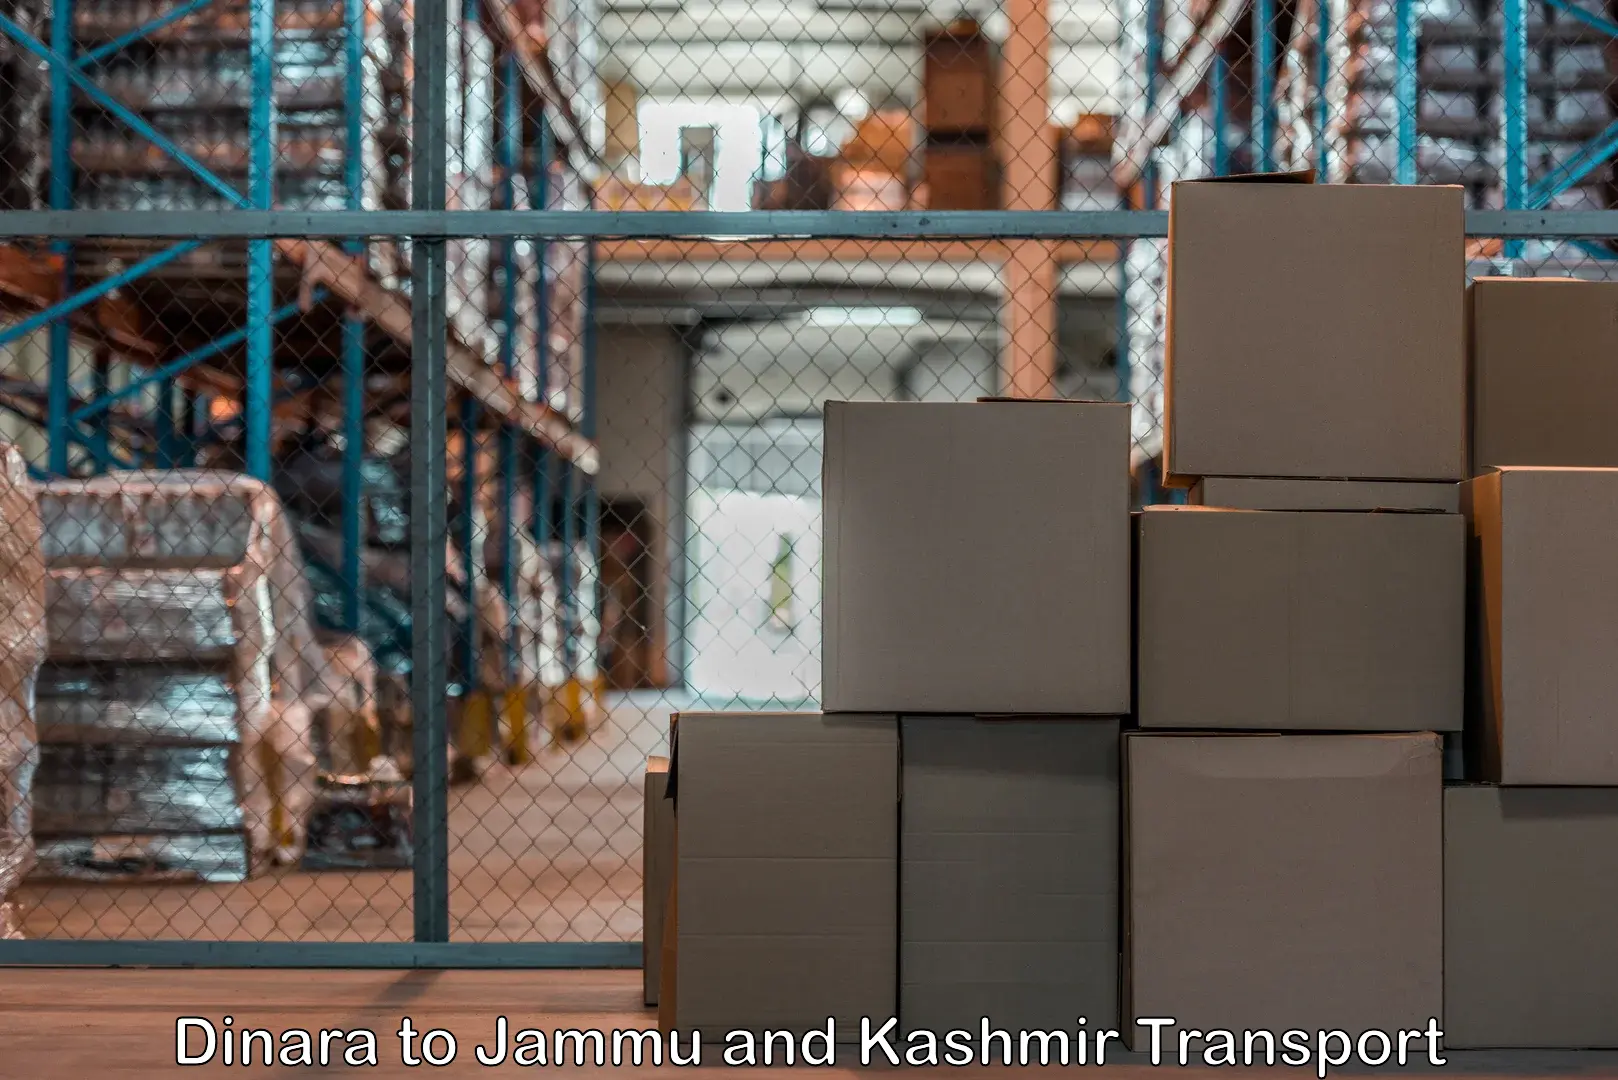 Transport shared services Dinara to Jammu and Kashmir